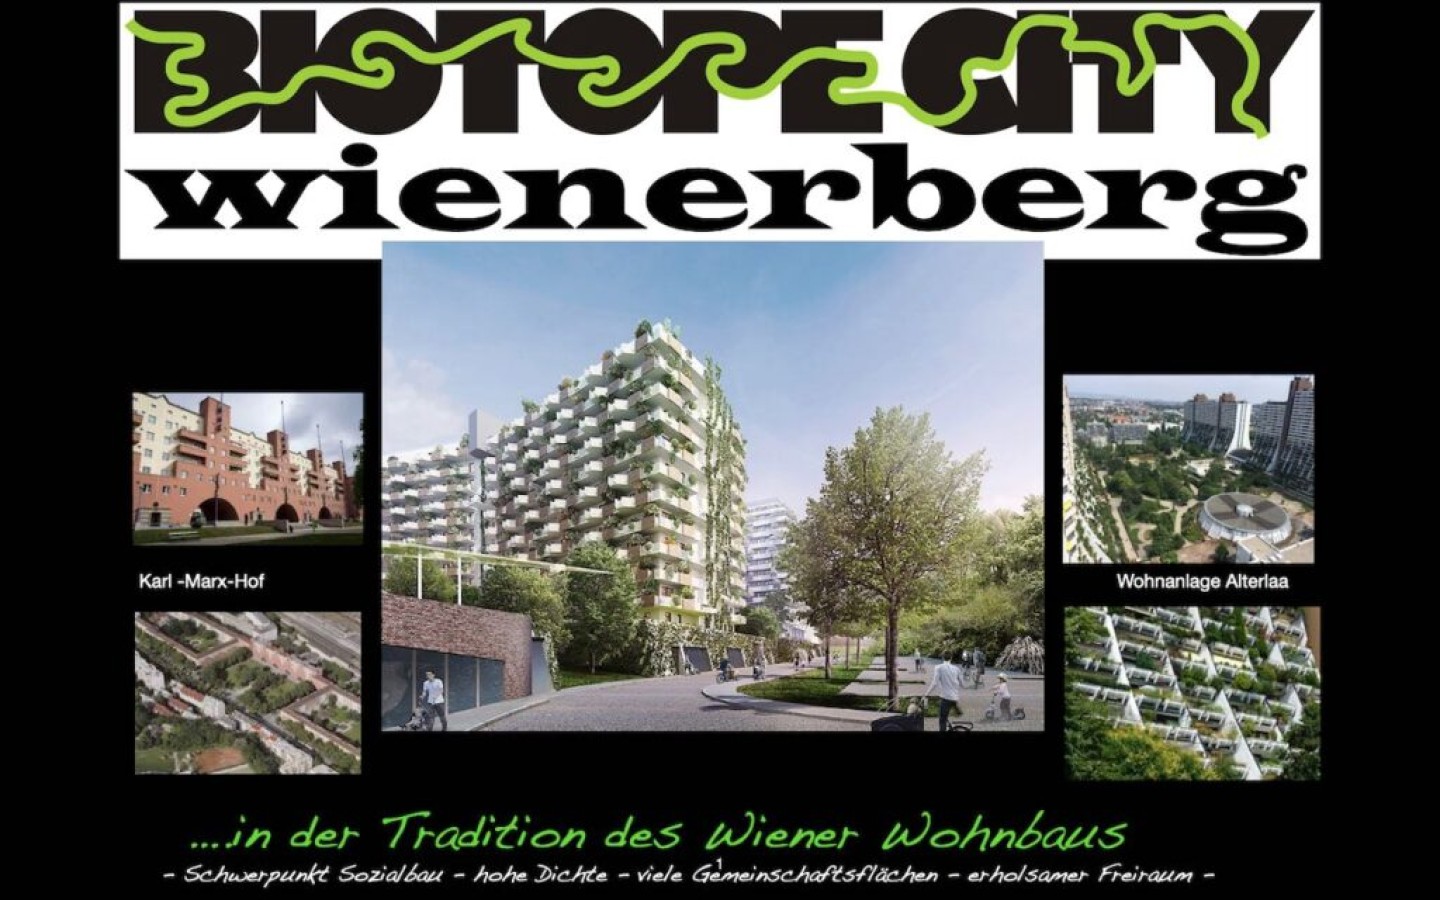 Biotope City Wienerberg